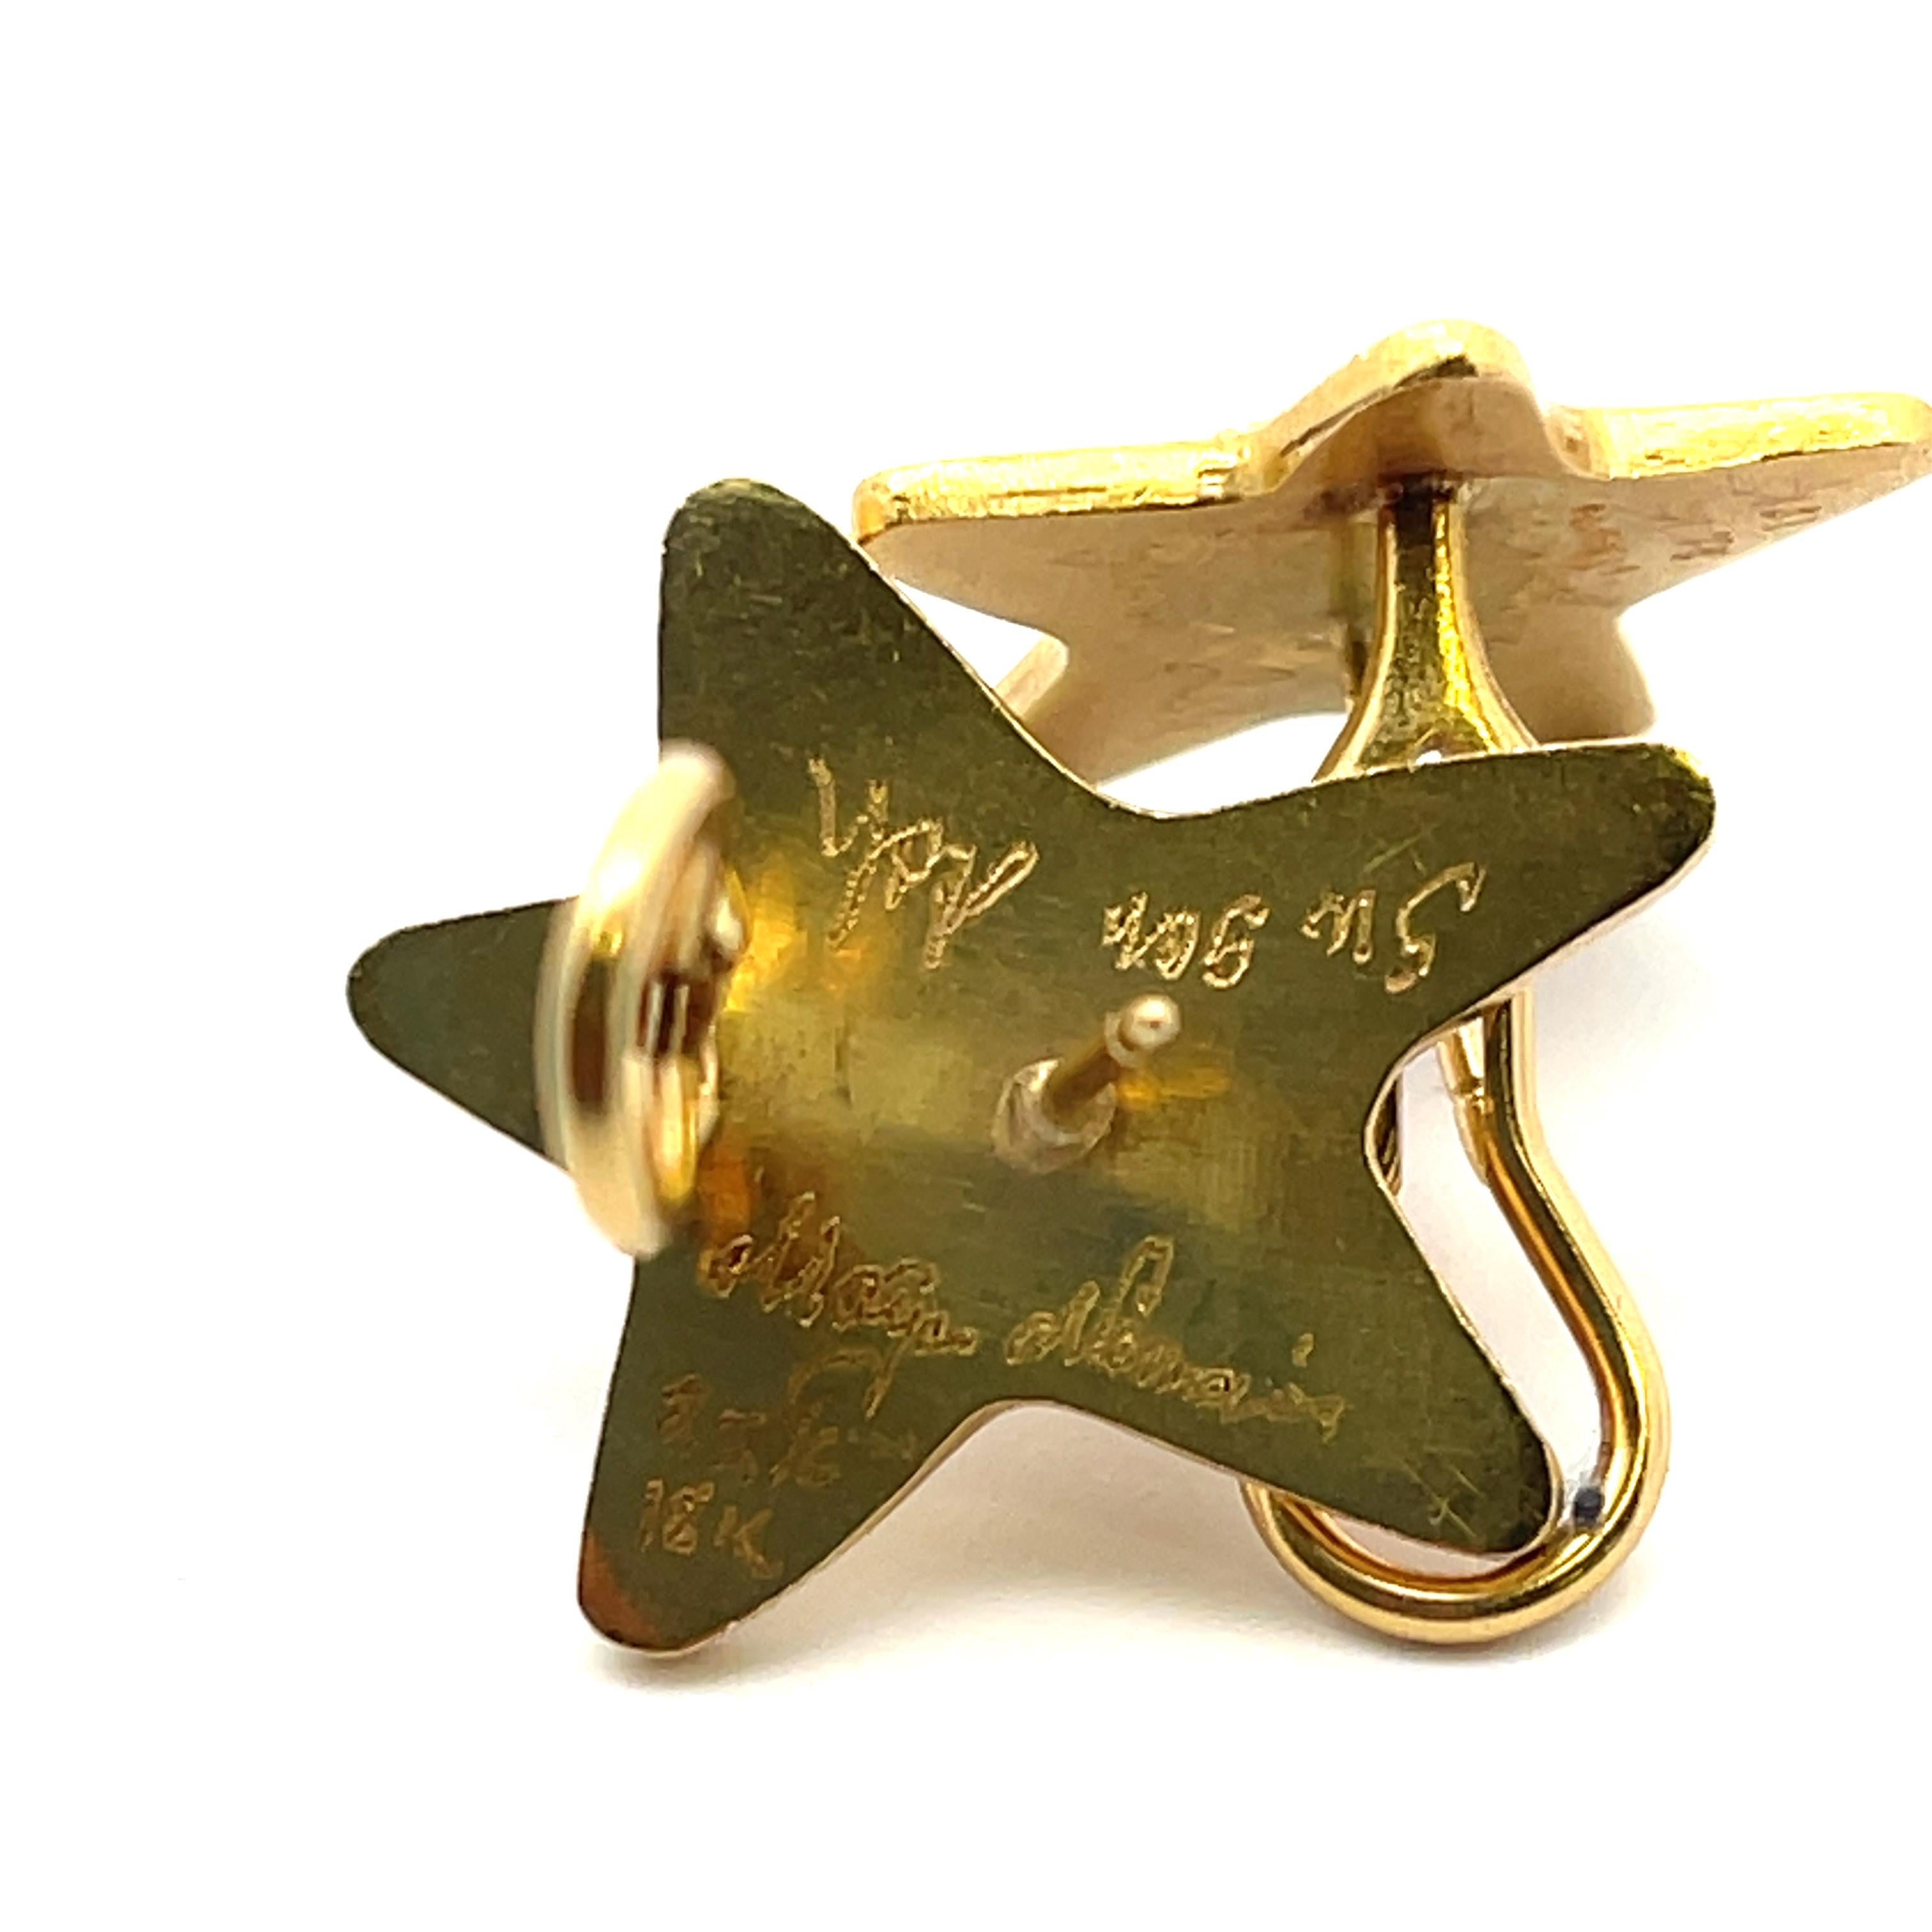 Stern Ohrringe Handgefertigt in 22K Gelbgold. Gezeichnet Maya. Mit Stift und Omega-Boden aus 18 Karat Gelbgold. 
13,09 Gramm
1